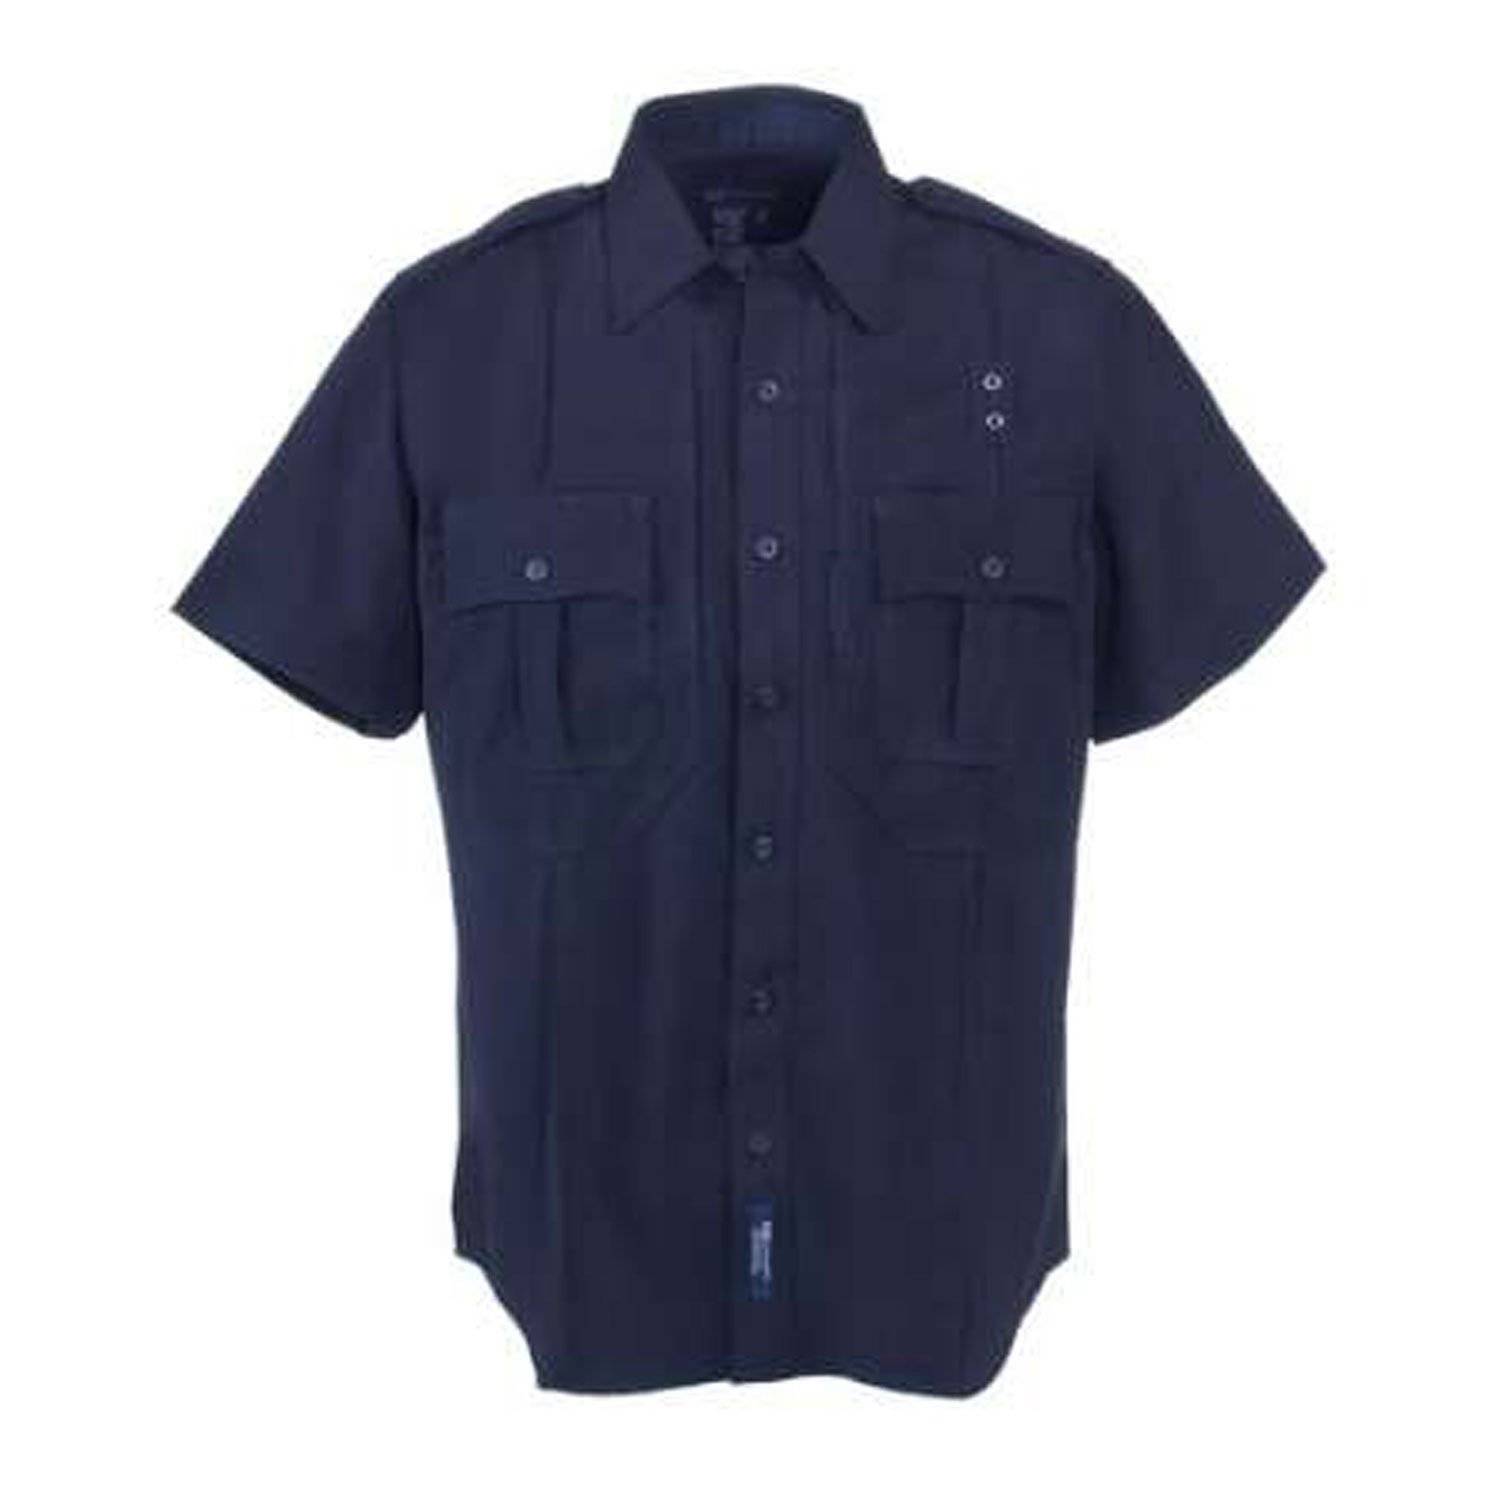 5.11 Tactical B-Class Short Sleeve Uniform Shirt